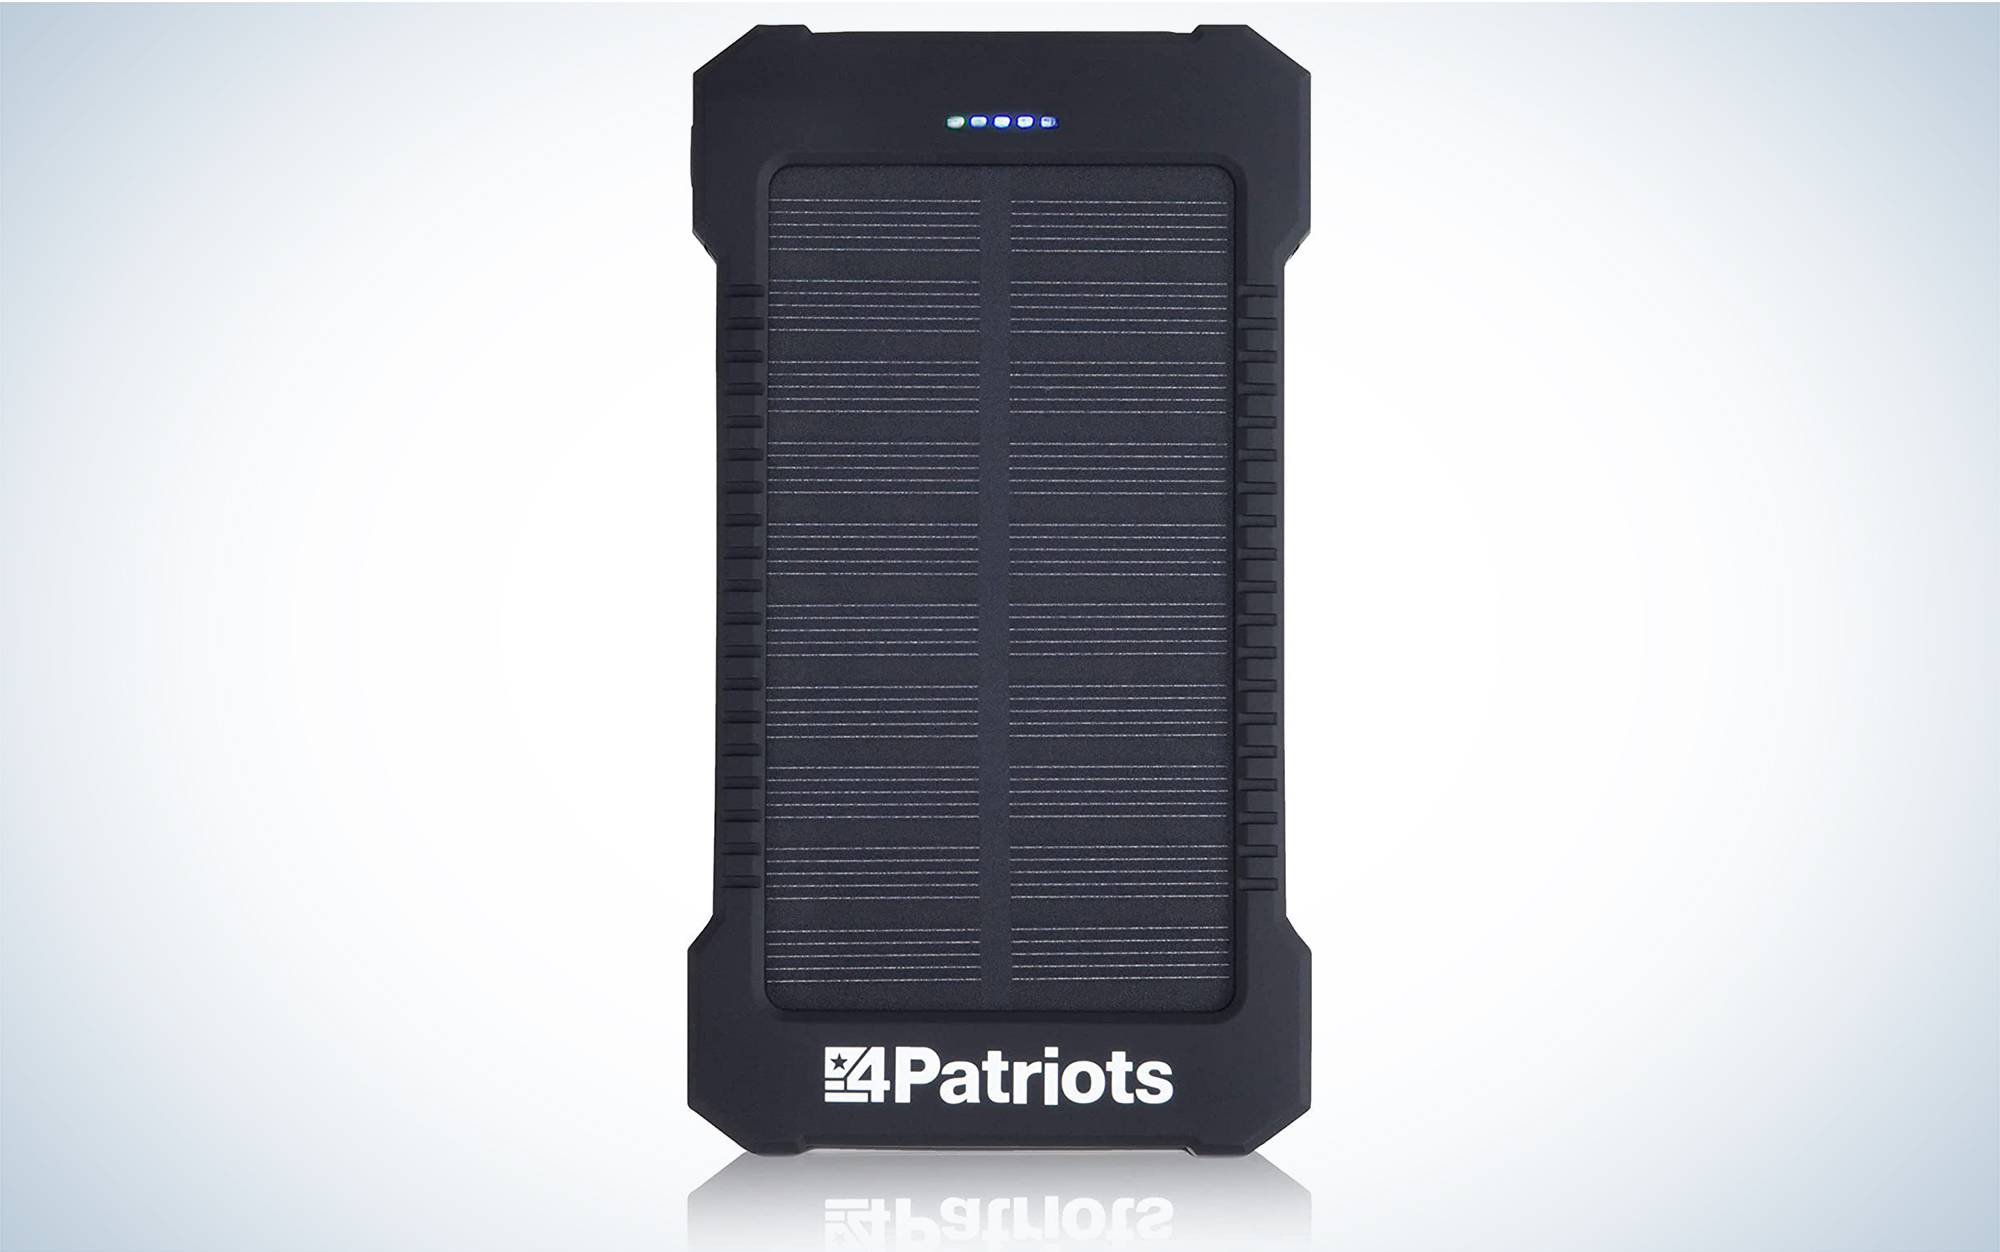 4PATRIOTS Portable Solar Power Bank